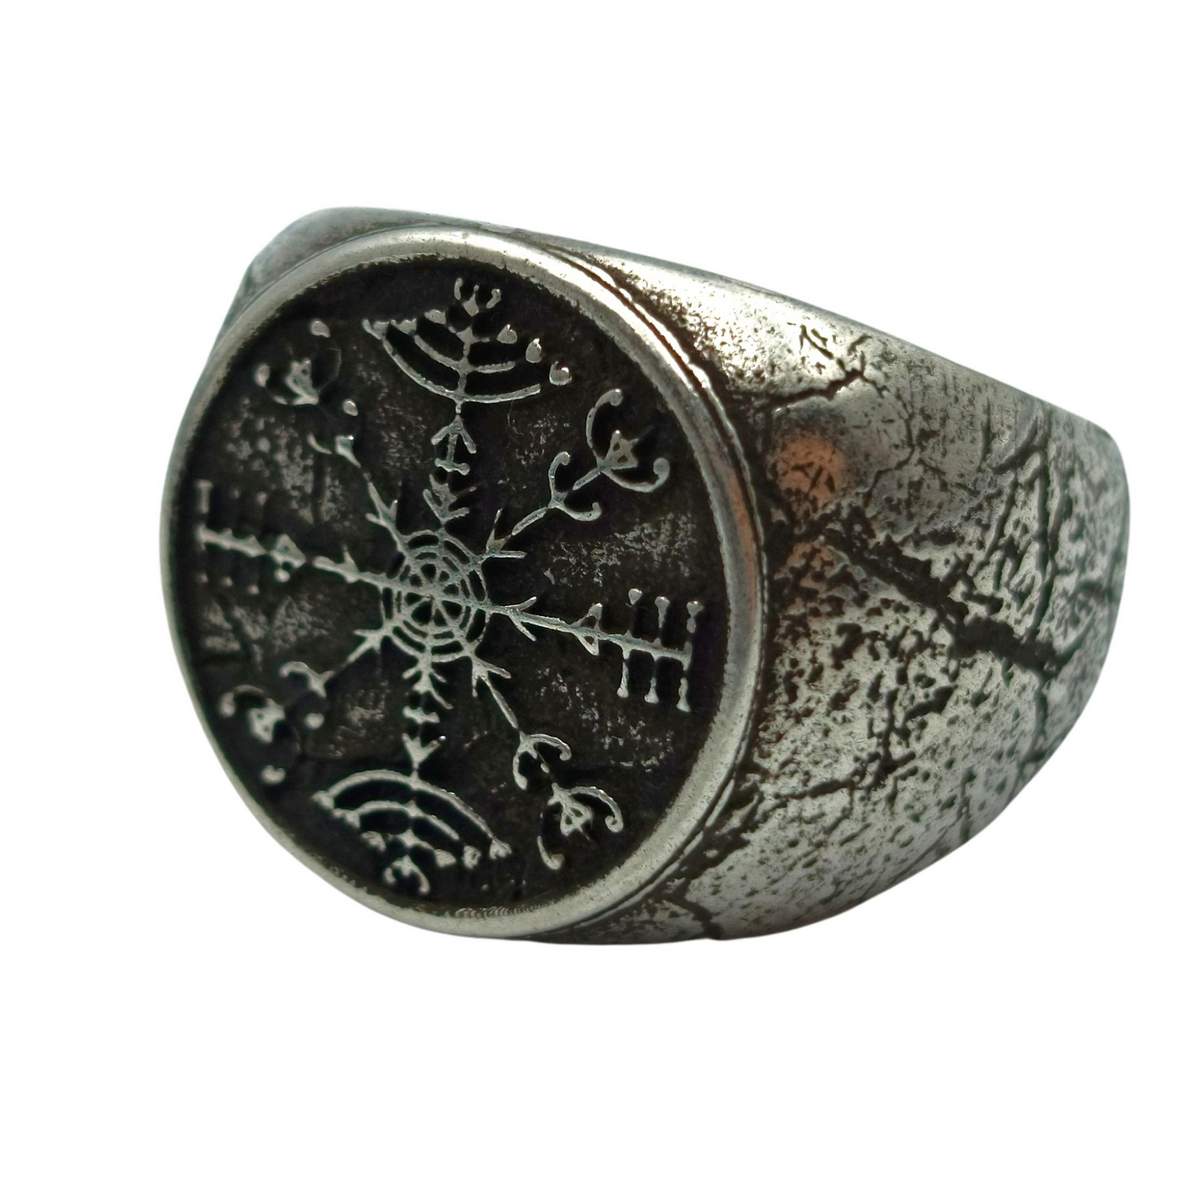 Veldismagn ring from bronze   